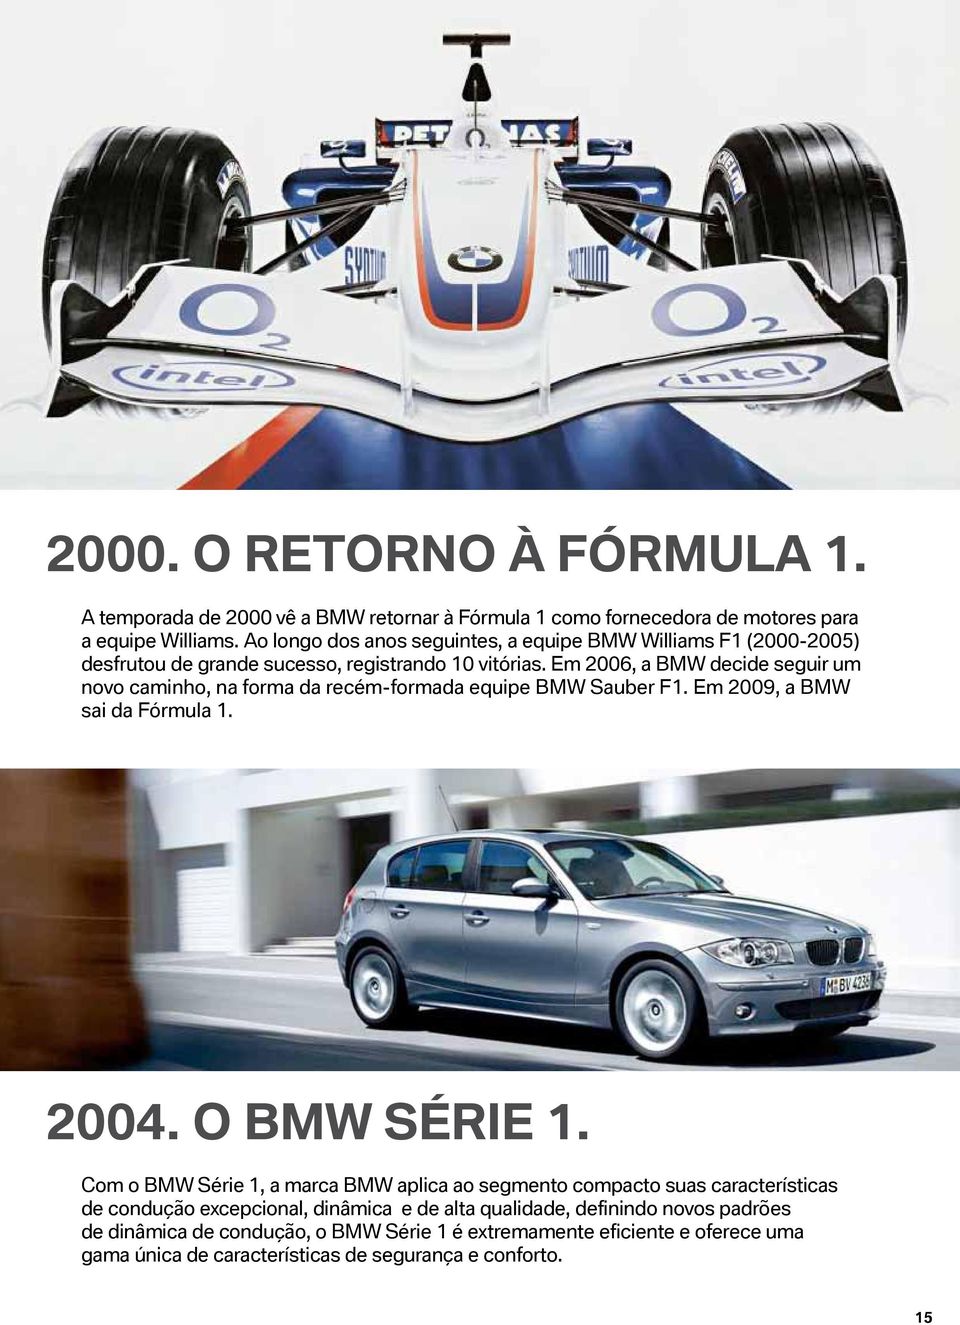 Em 2006, a BMW decide seguir um novo caminho, na forma da recém-formada equipe BMW Sauber F1. Em 2009, a BMW sai da Fórmula 1. 2004. O BMW Série 1.